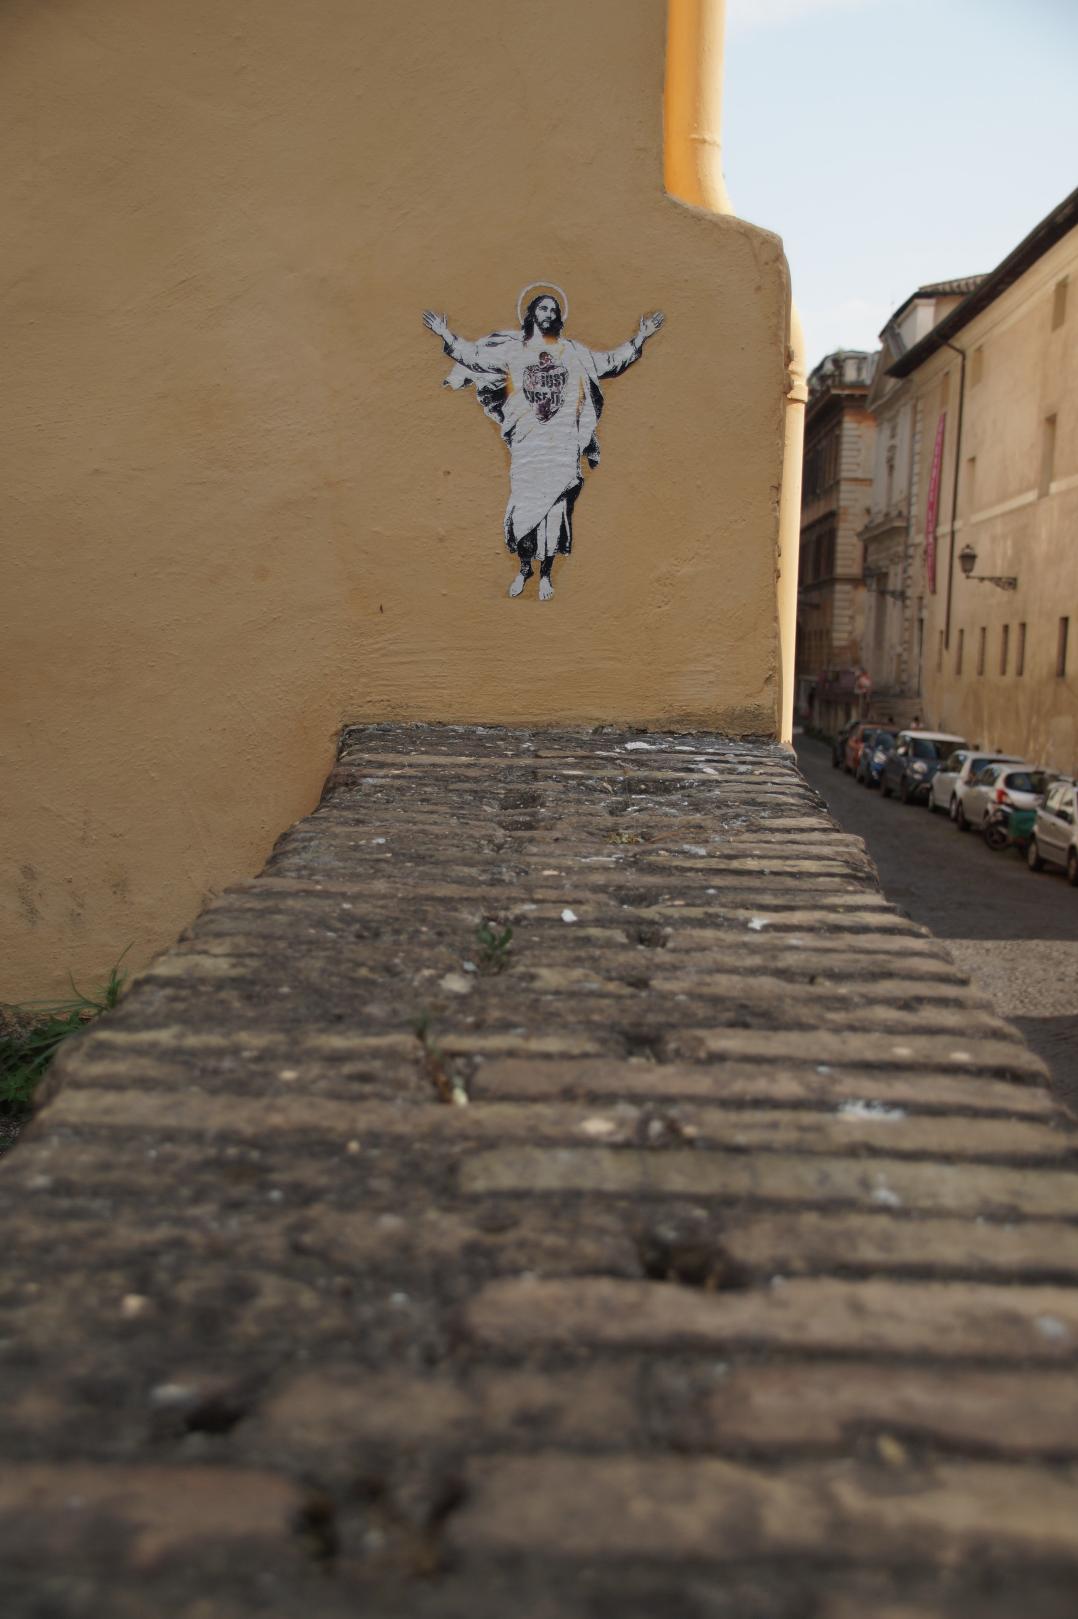 Zu sehen ist ein Jesus, der von einem Graffitikünstler auf eine Wand gesprüht wurde